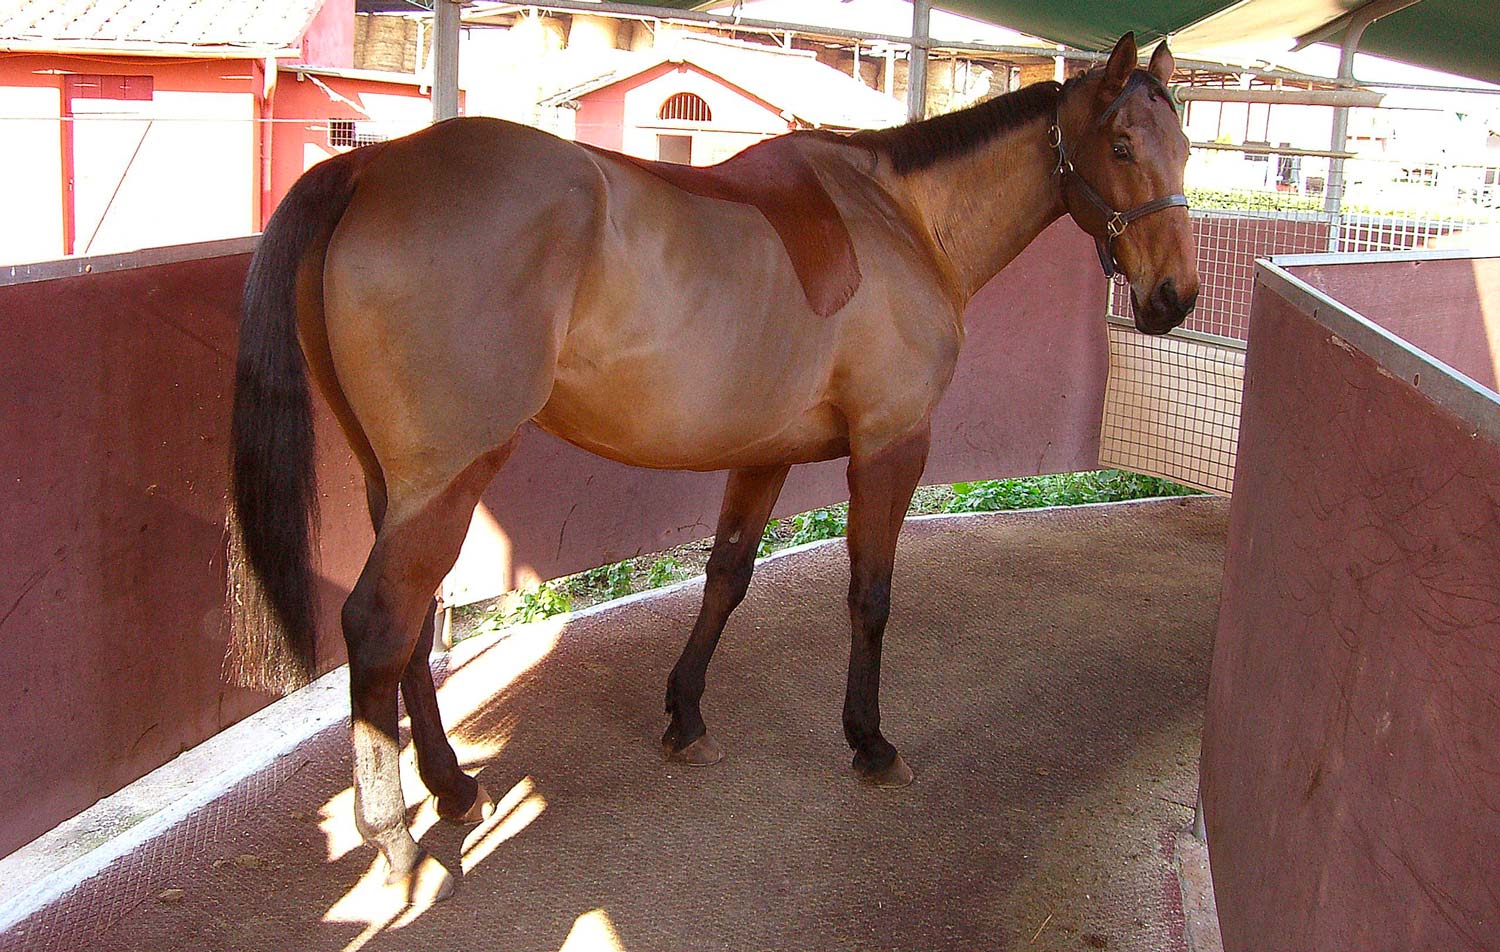 La giostra per i cavalli è sempre più diffusa nelle scuderie ed è considerata un vero e proprio plus tra i servizi offerti dai centri ippici.